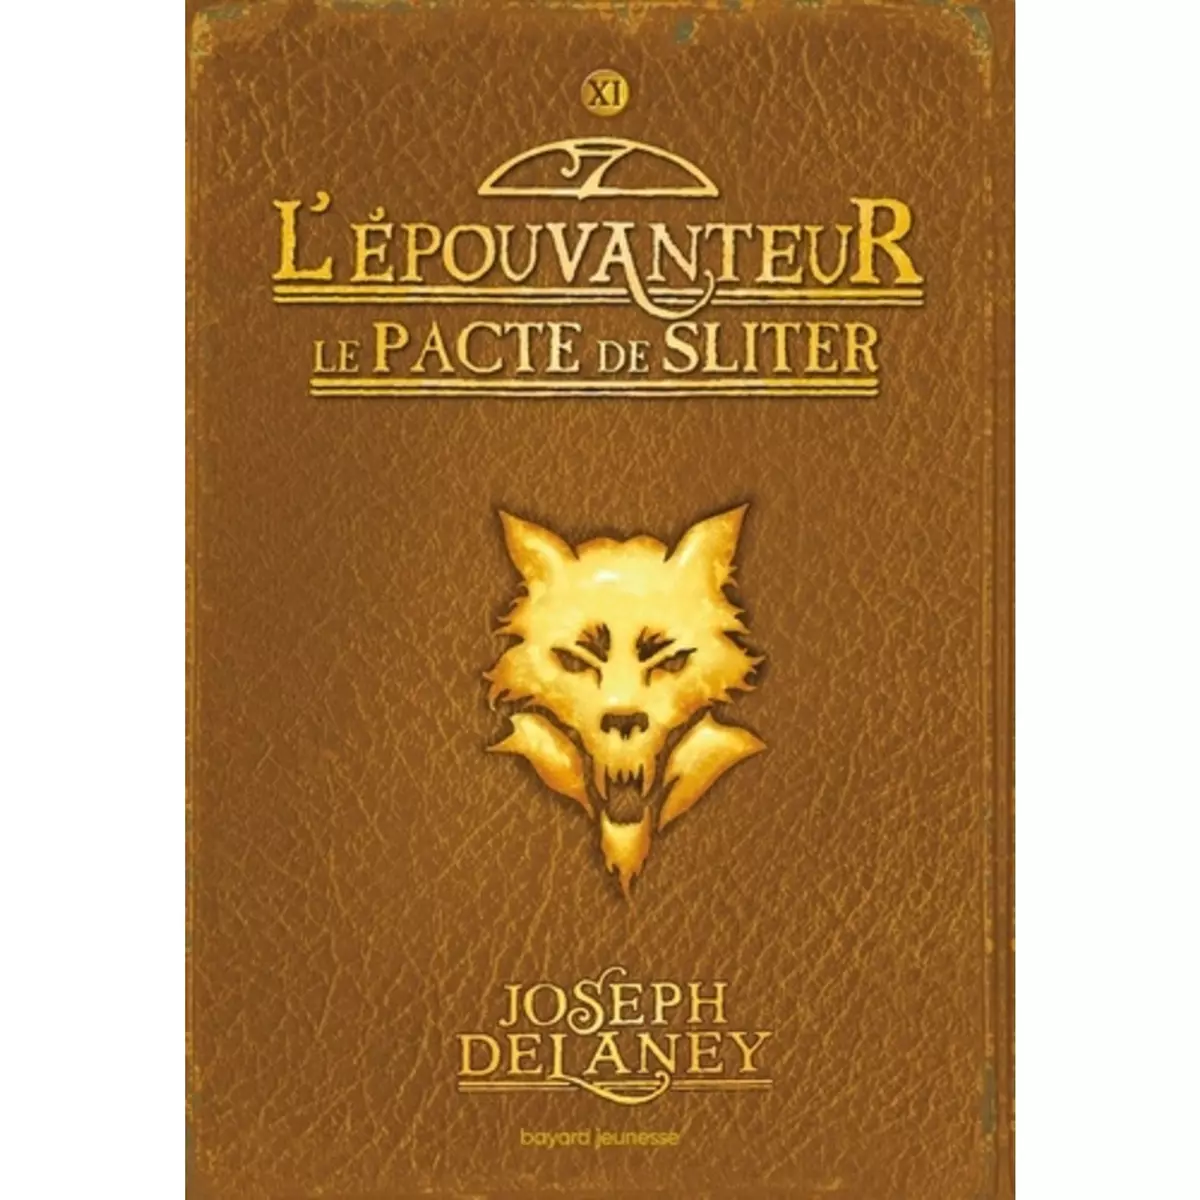  L'EPOUVANTEUR TOME 11 : LE PACTE DE SLITER, Delaney Joseph